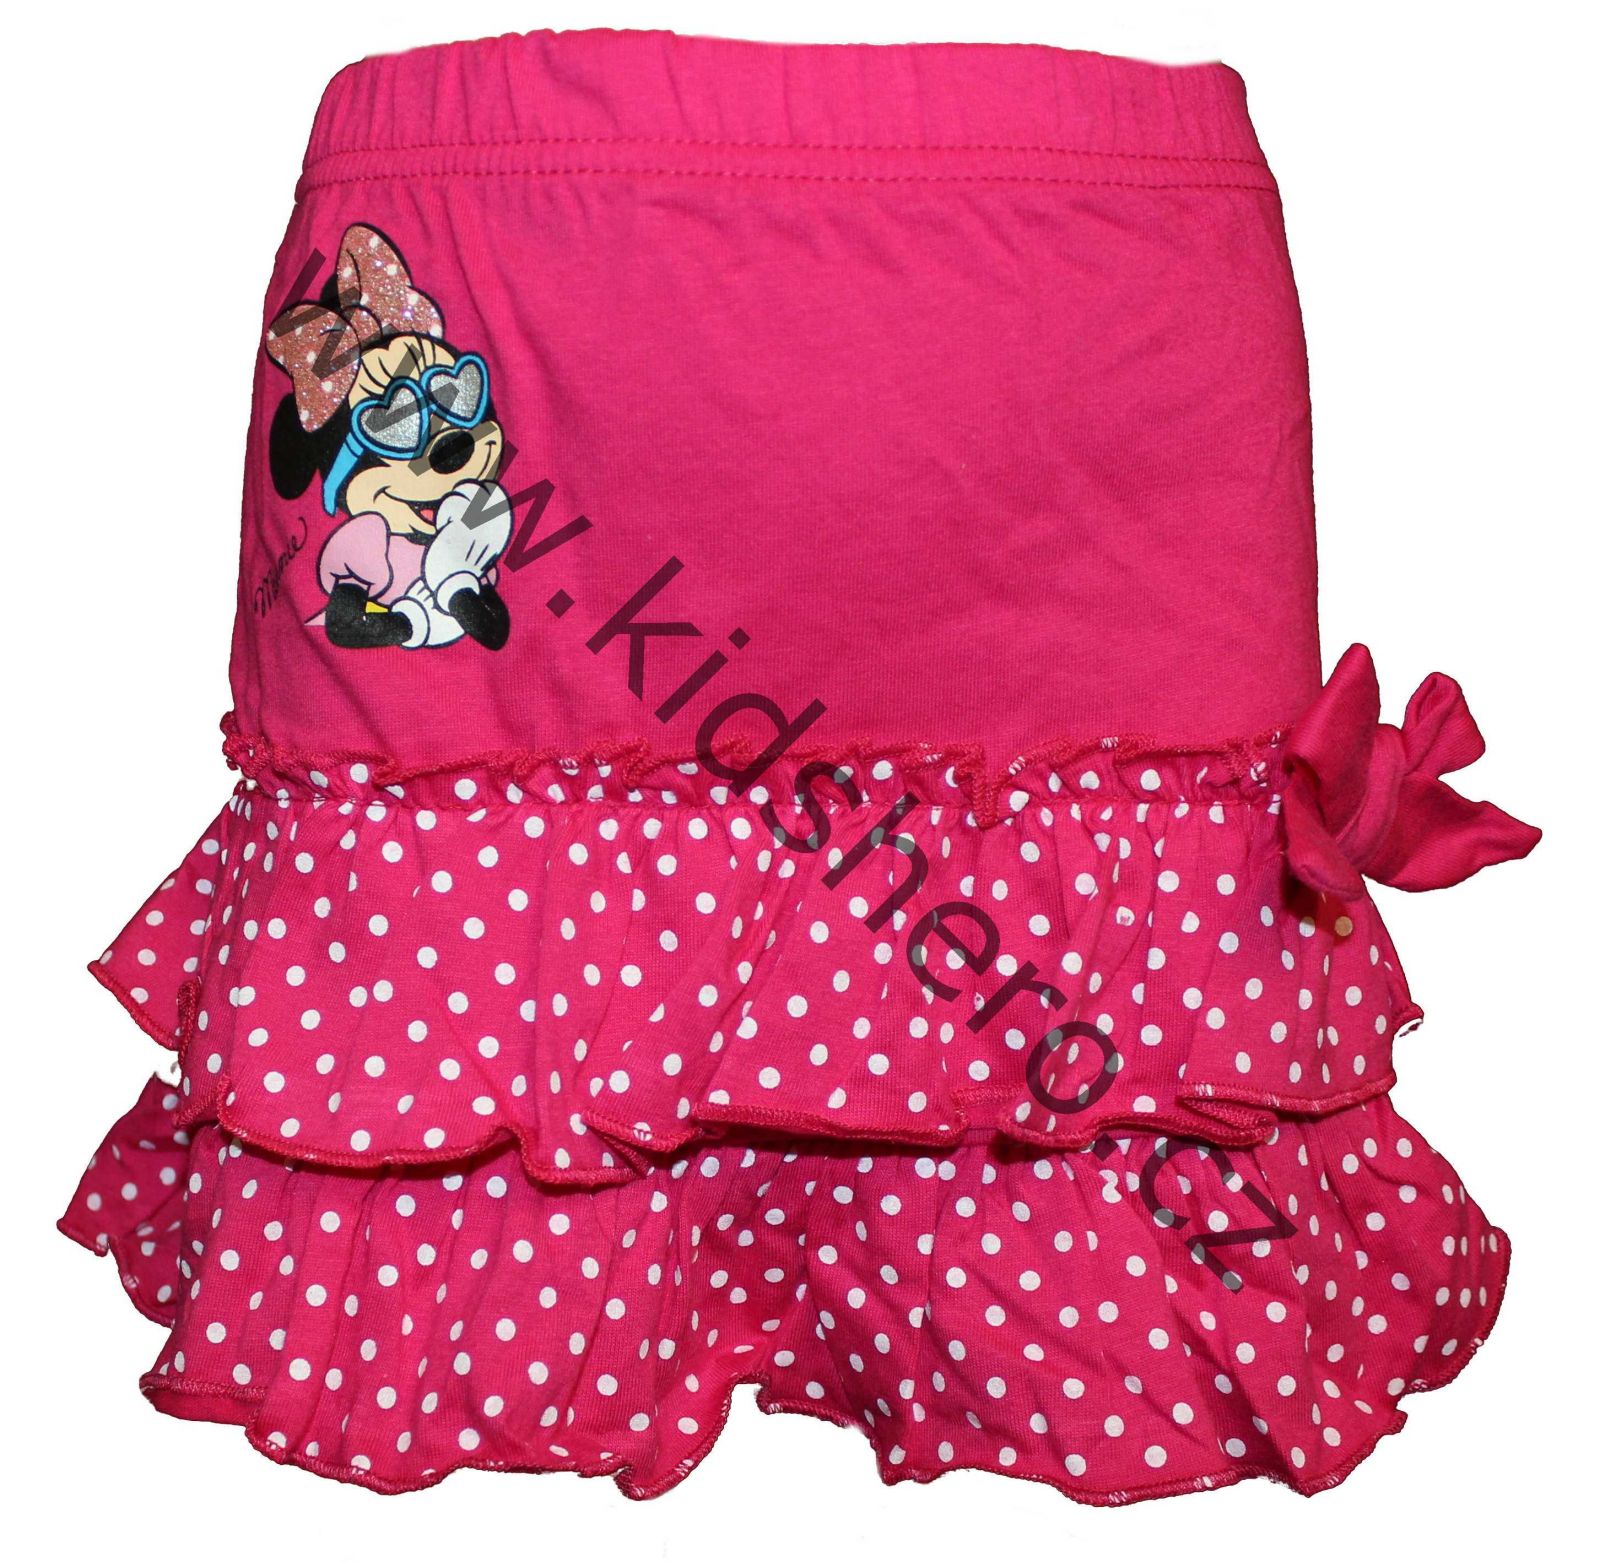 Dětská sukně Minnie, dívčí bavlněná sukně Minnie, sukýnka Disney